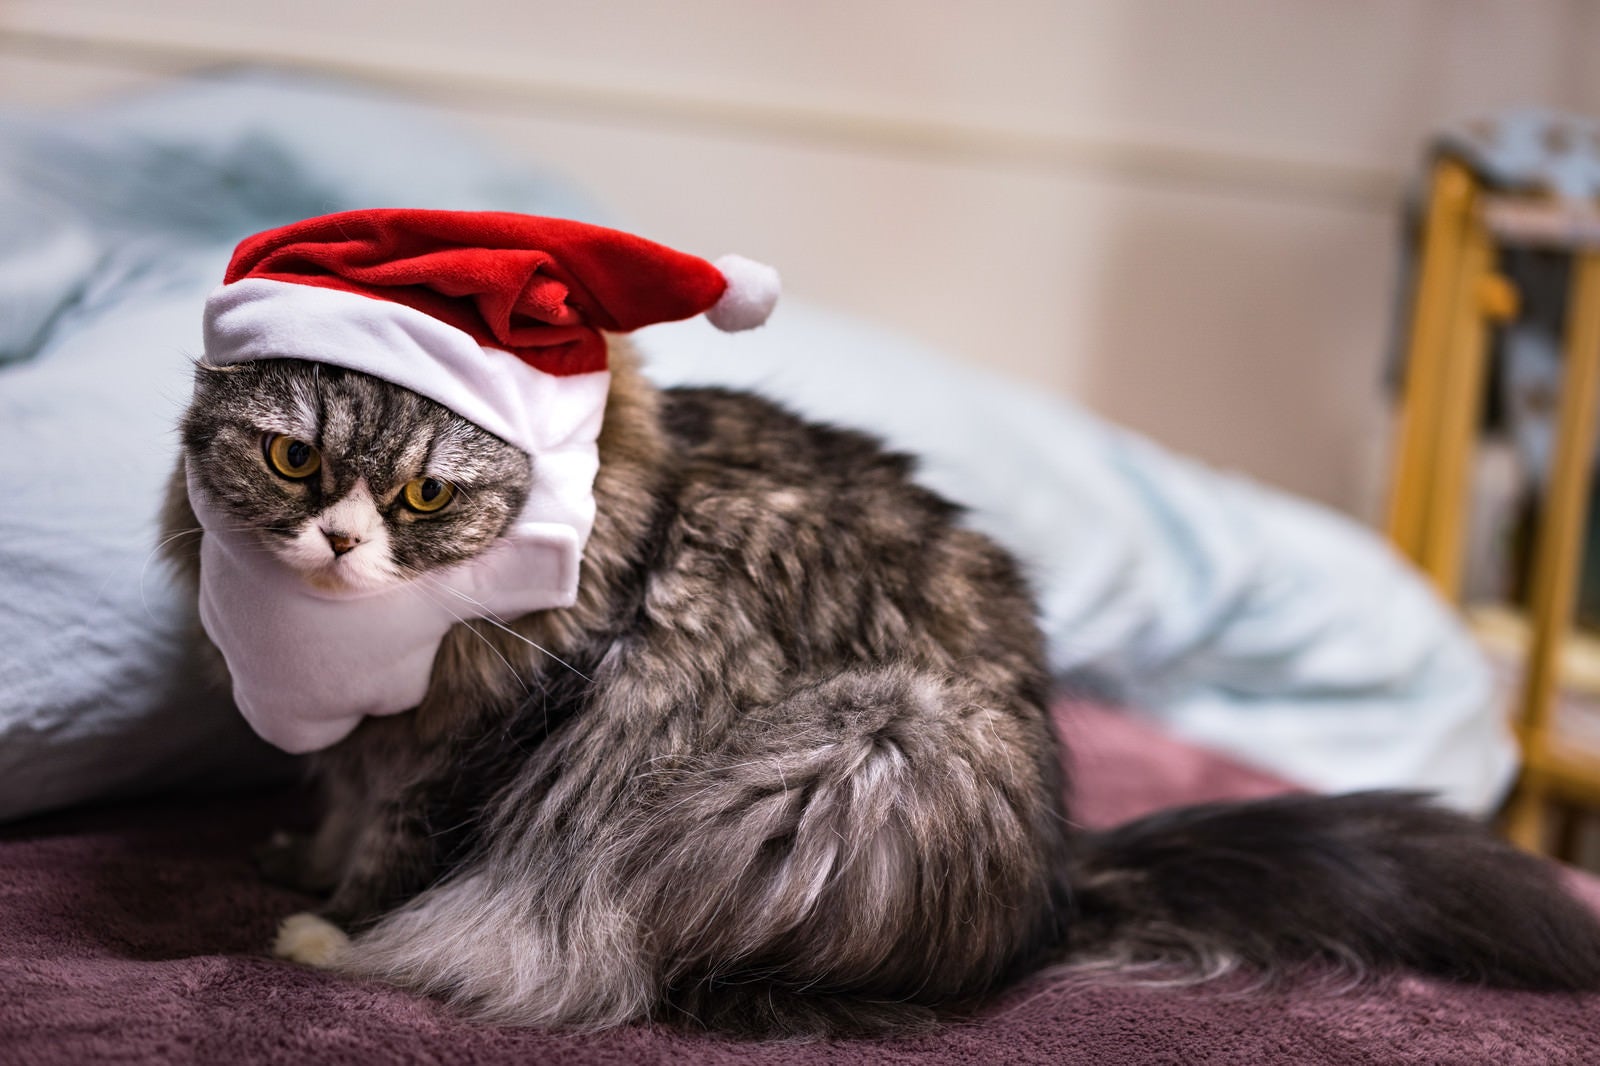 「クリスマス寝過ごした猫」の写真